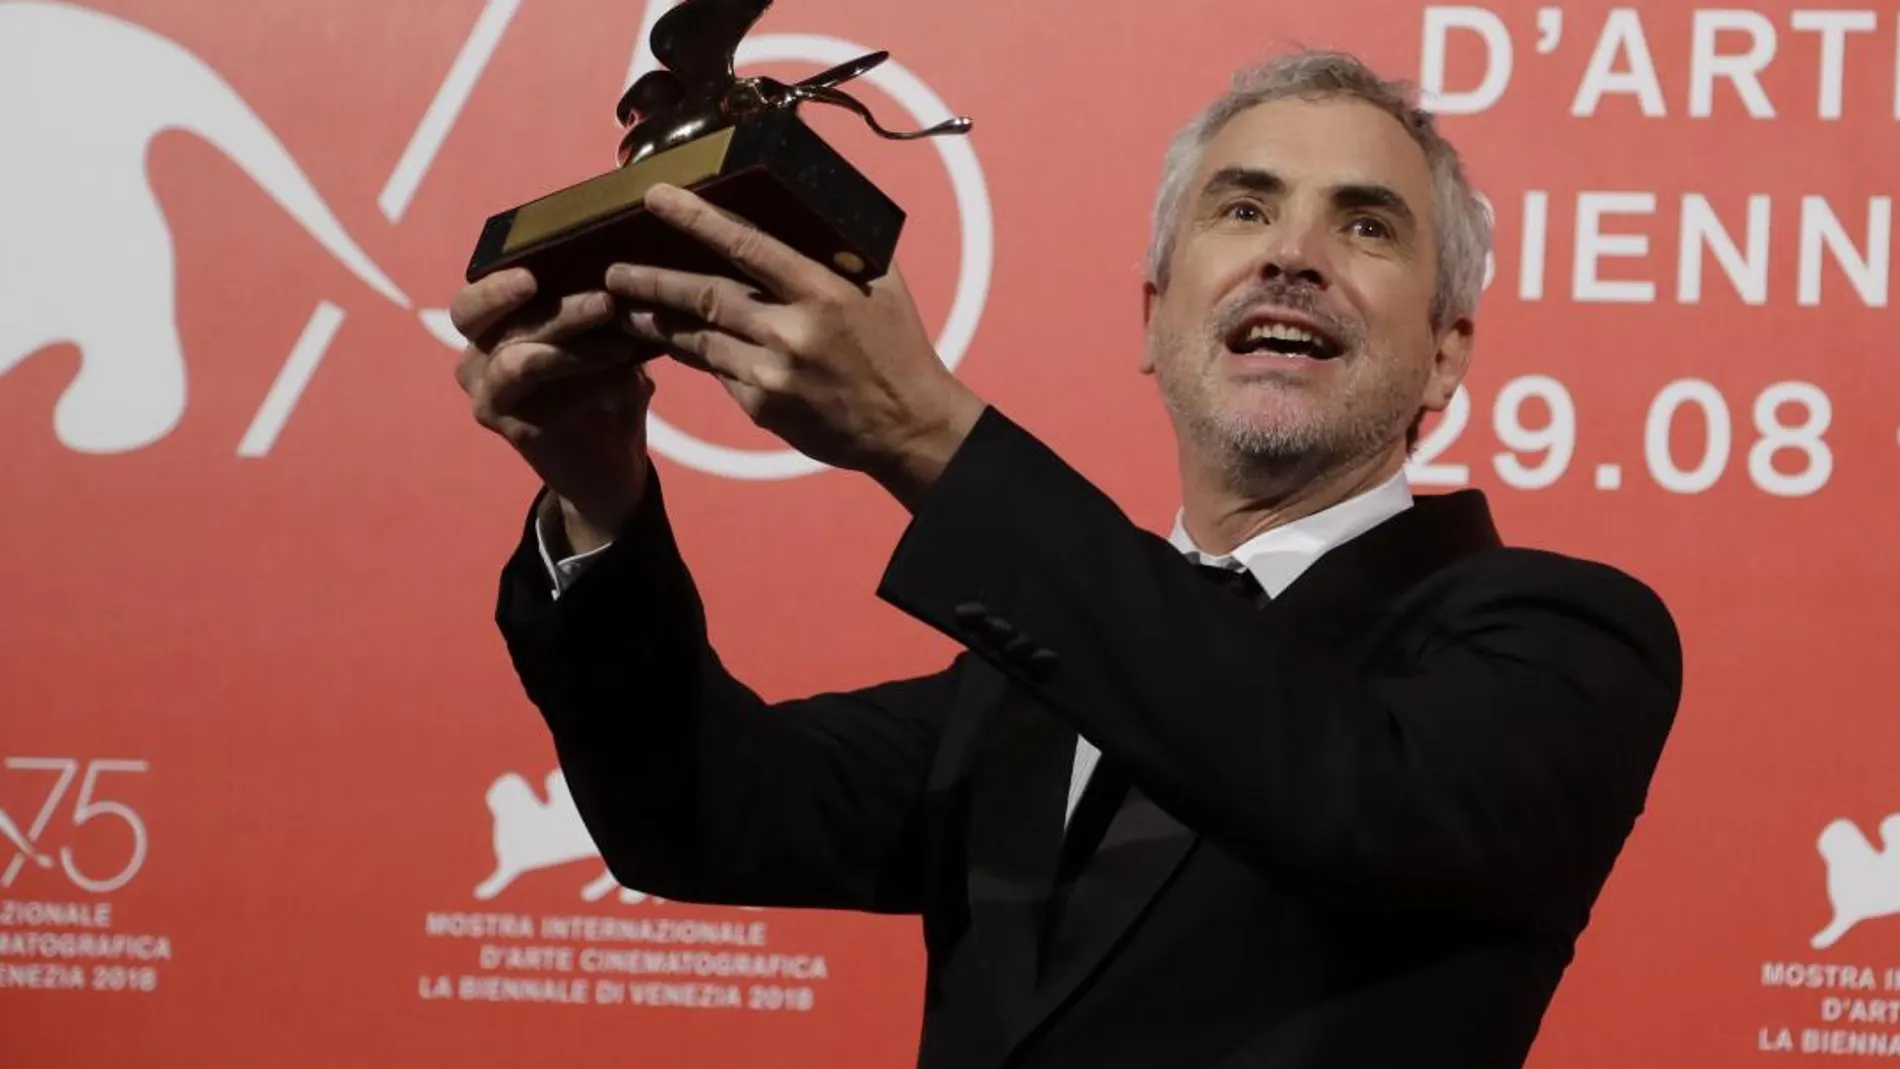 Alfonso Cuarón tras recibir el galardón en Venecia / Foto: AP